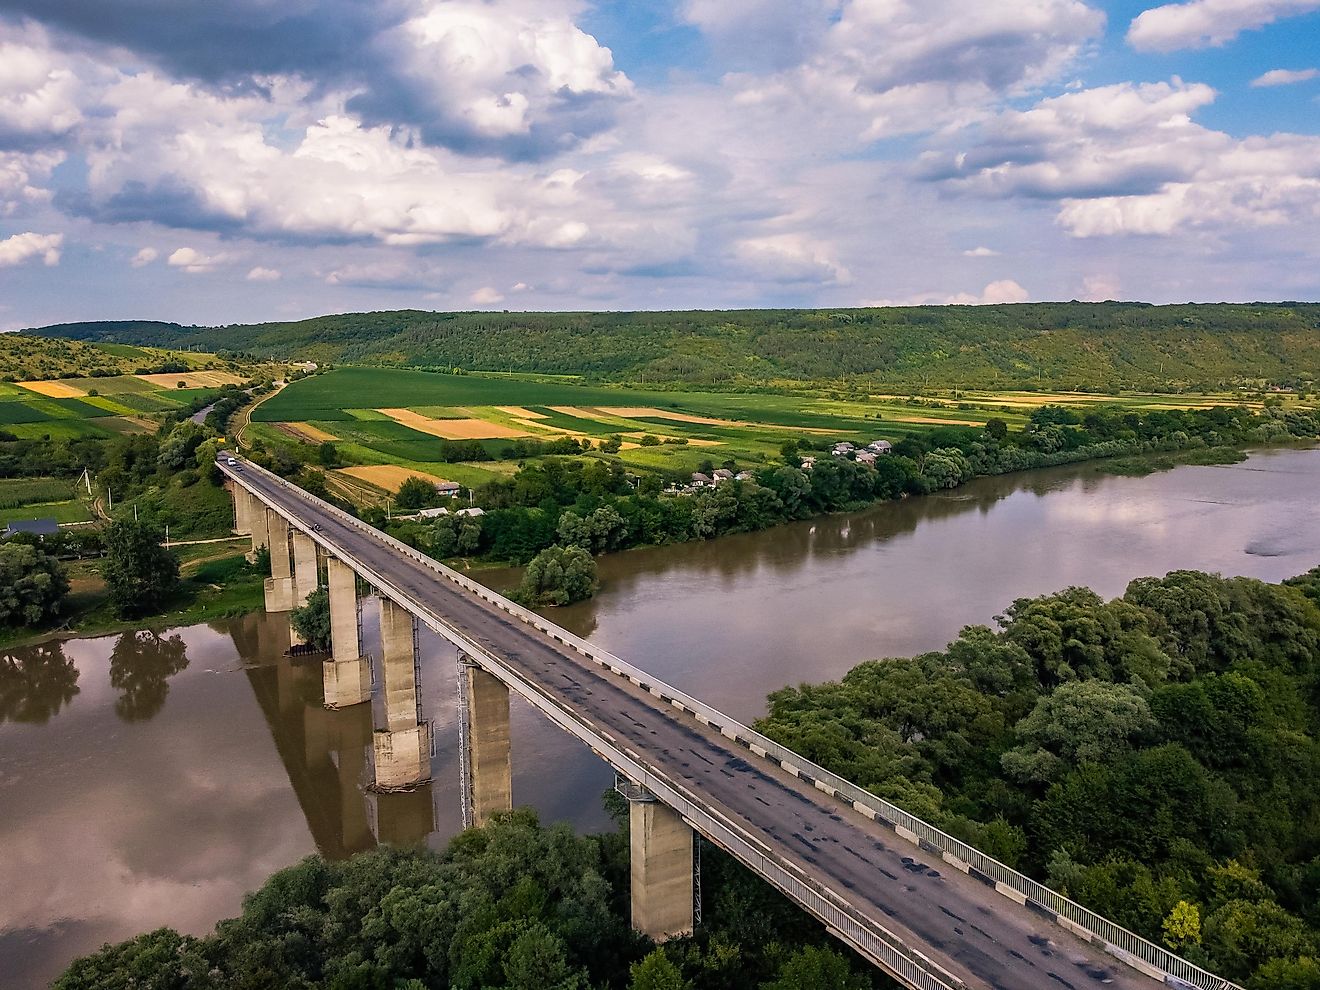 The Dniester River in Ukraine.